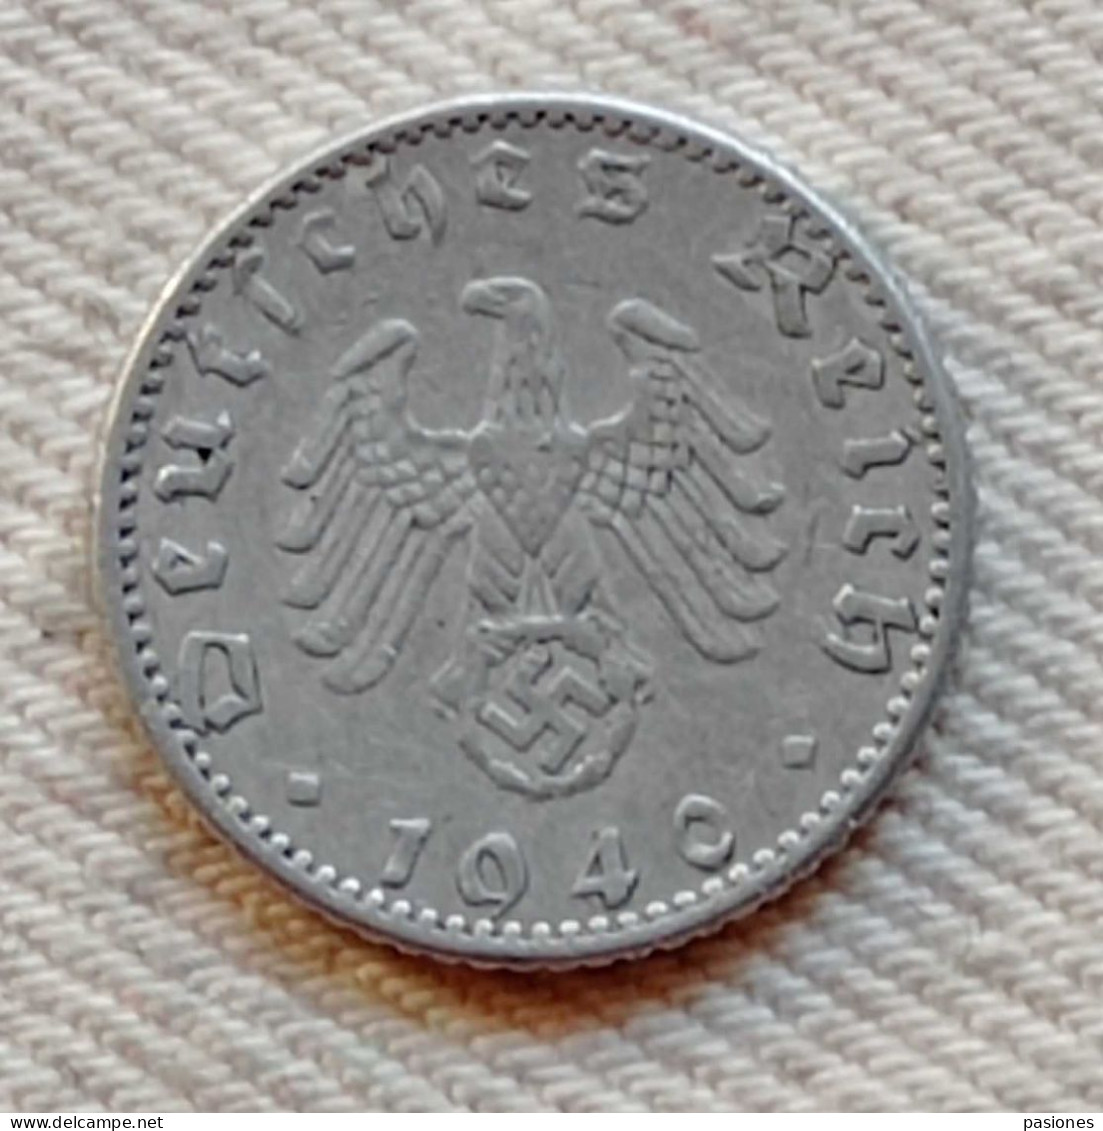 Germania 50 Reichspfennig 1940A - 50 Reichspfennig